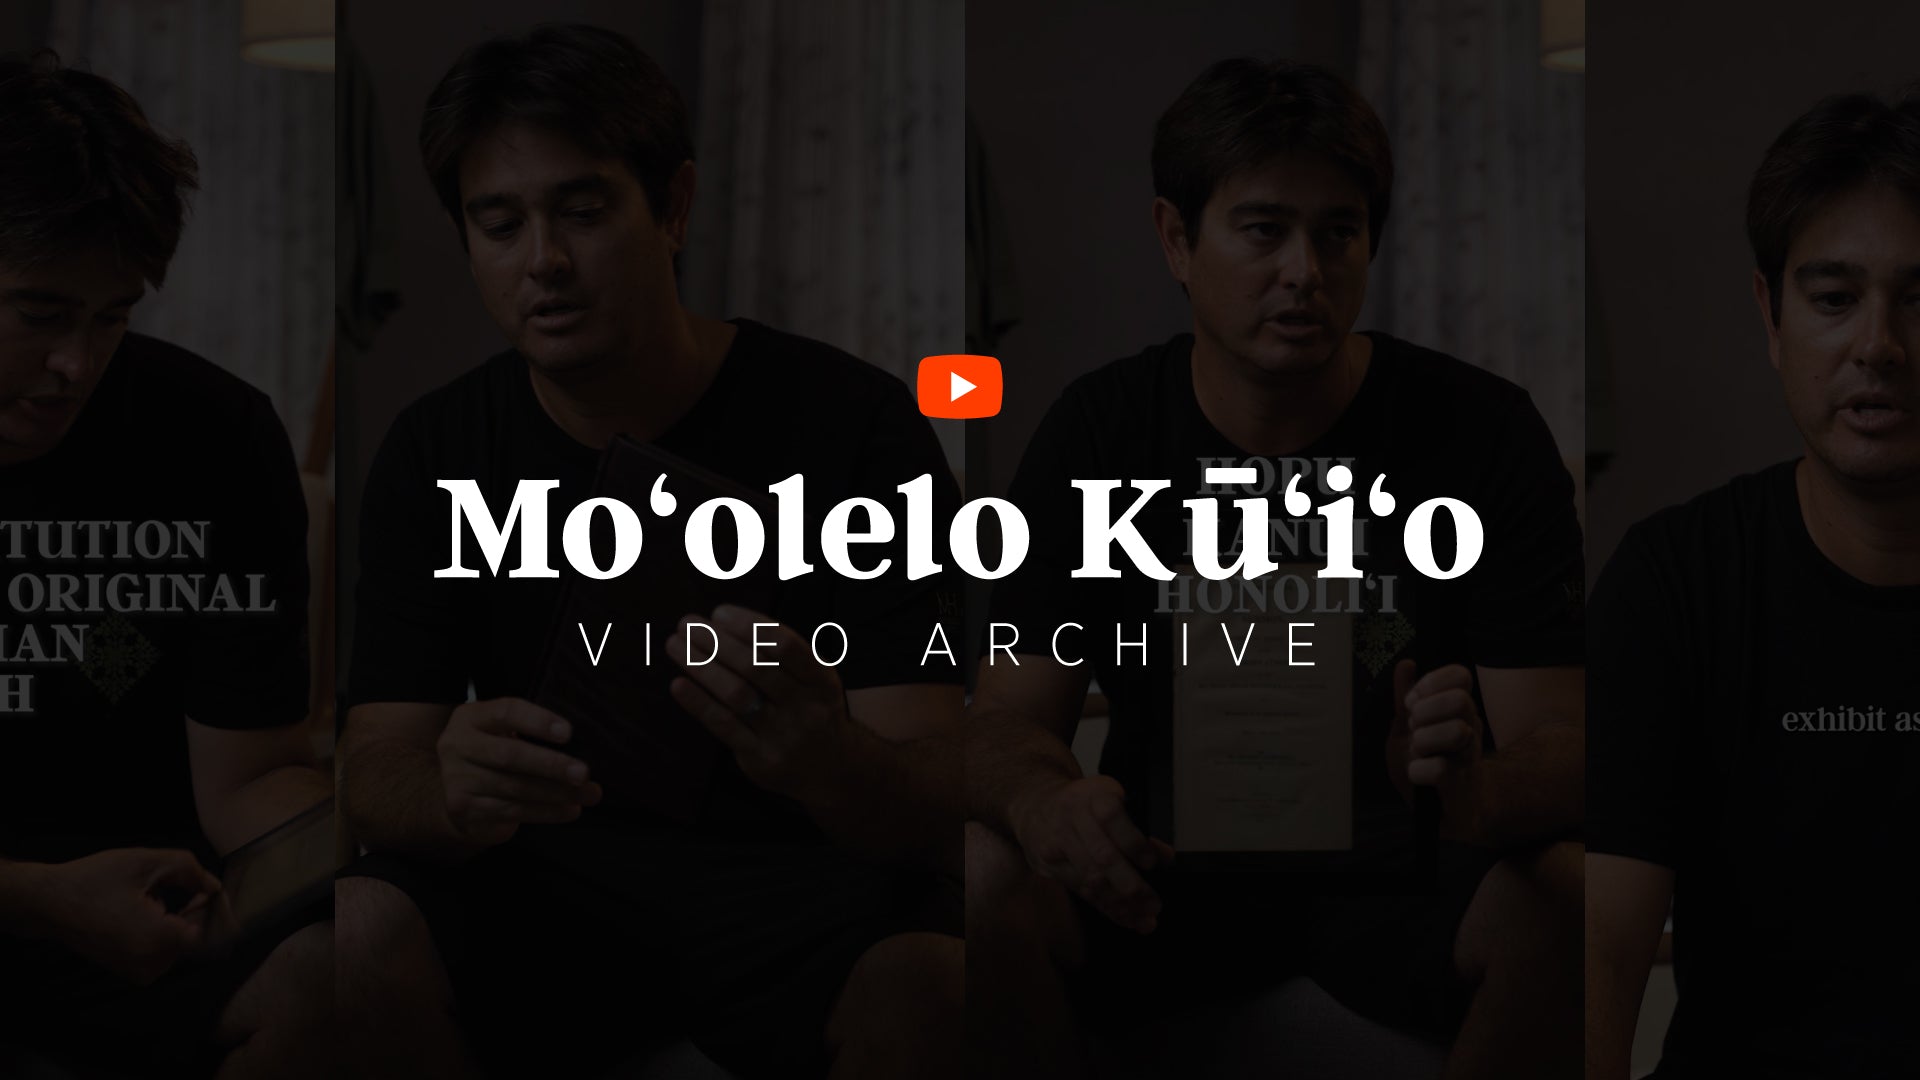 Mo‘olelo Kū‘i‘o Video Archive